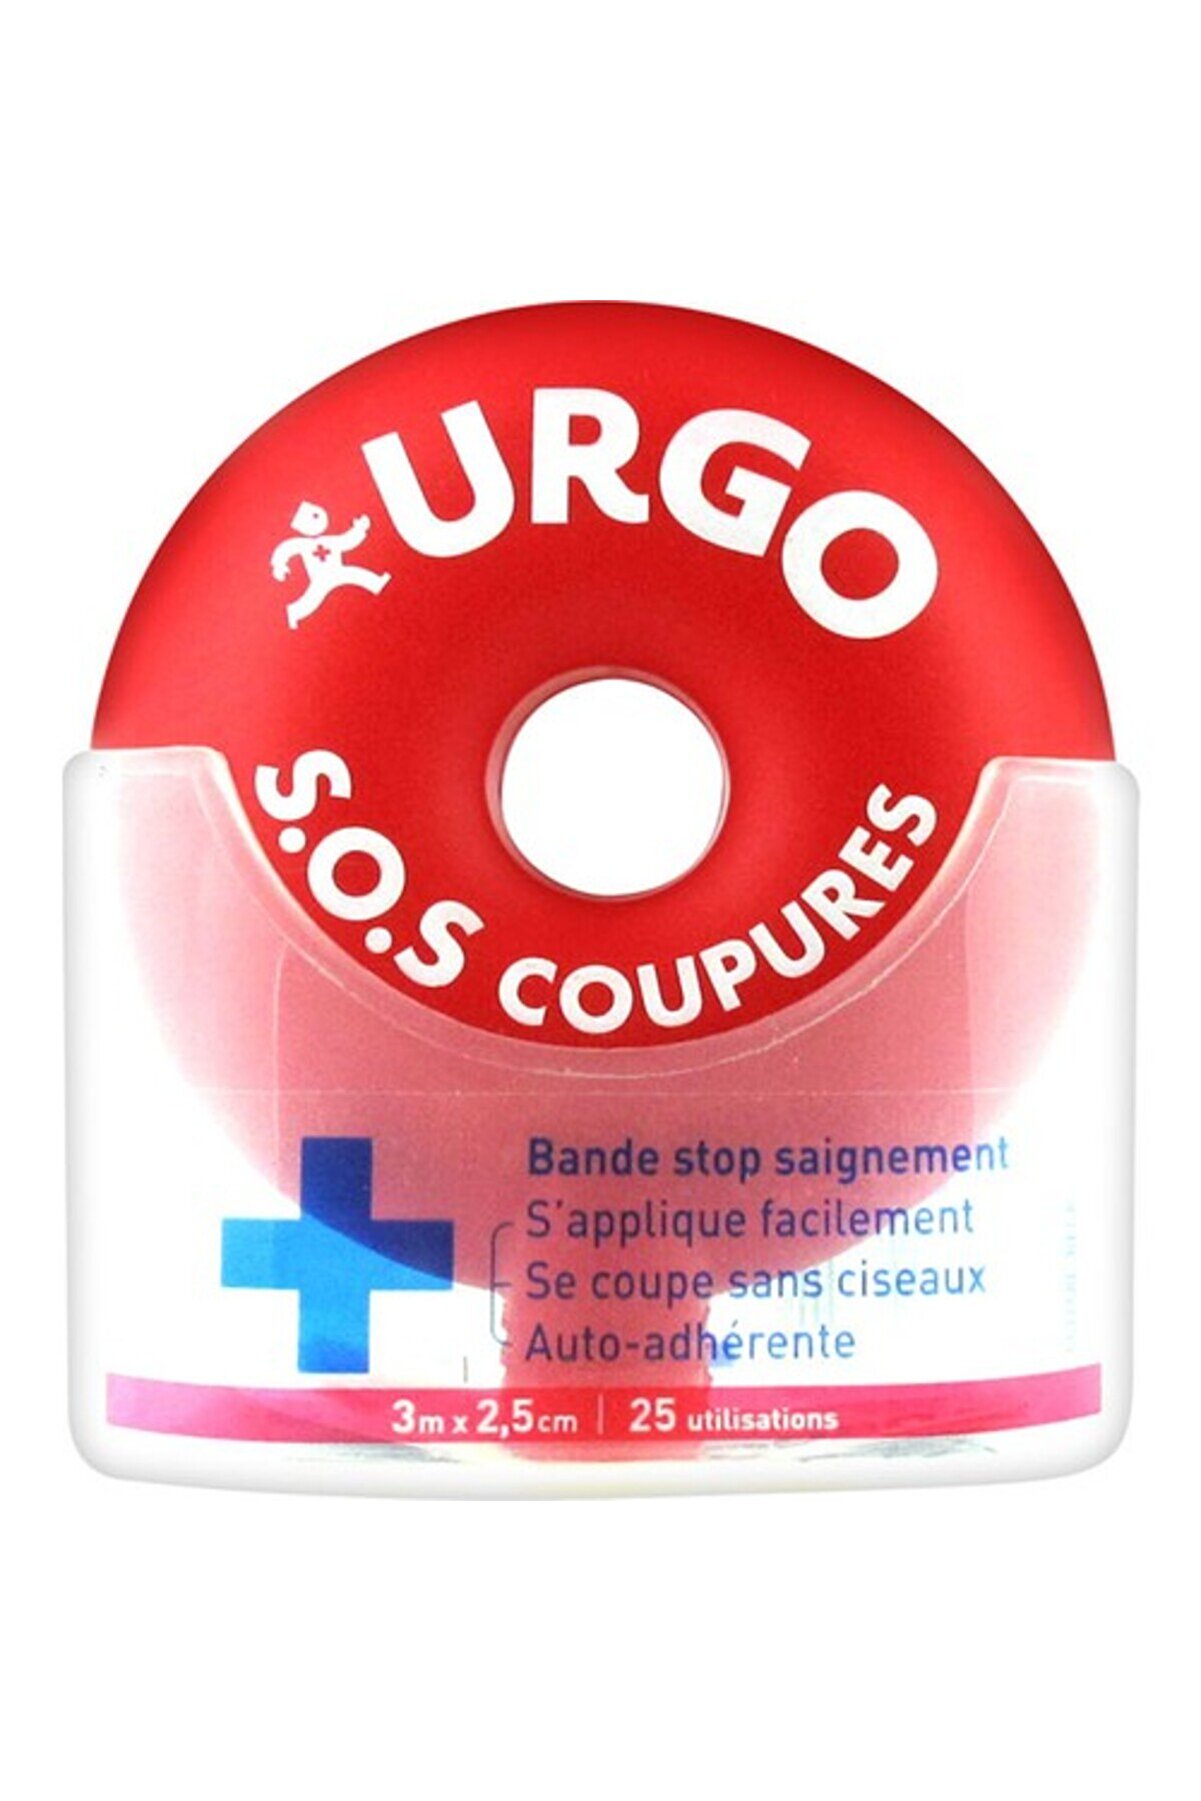 Urgo S.o.s Coupures Stop Bleeding Strip Kanamayı Durdurucu Yara Bandı 3m X 2,5cm 25 Uygulama